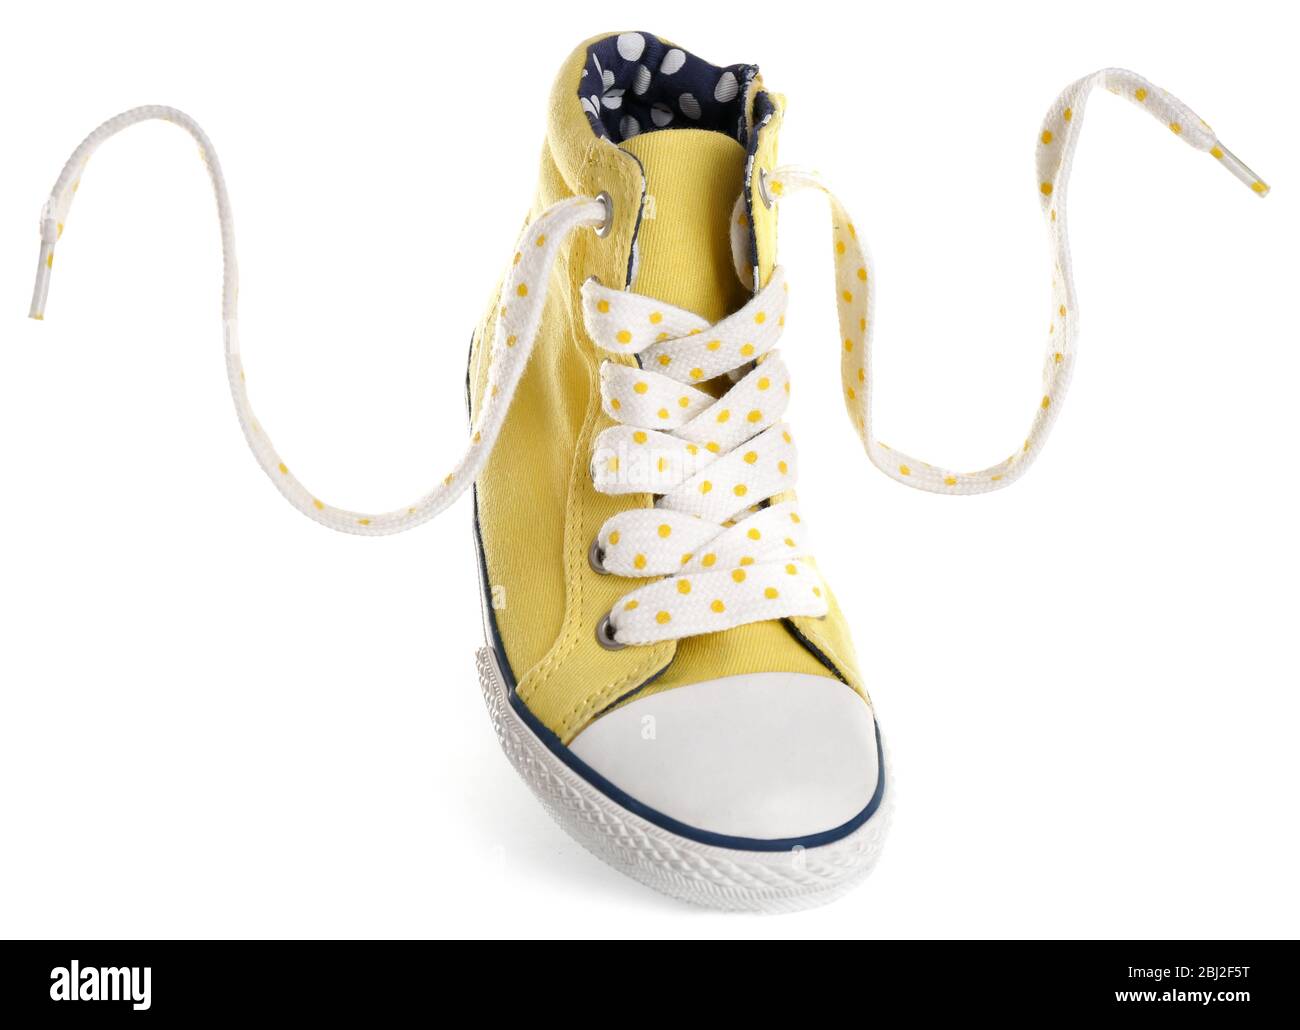 Black Gumshoe Isolated on White Background. Stylish Youth Shoes Stock Image  - Image of classic, hipster: 216414337